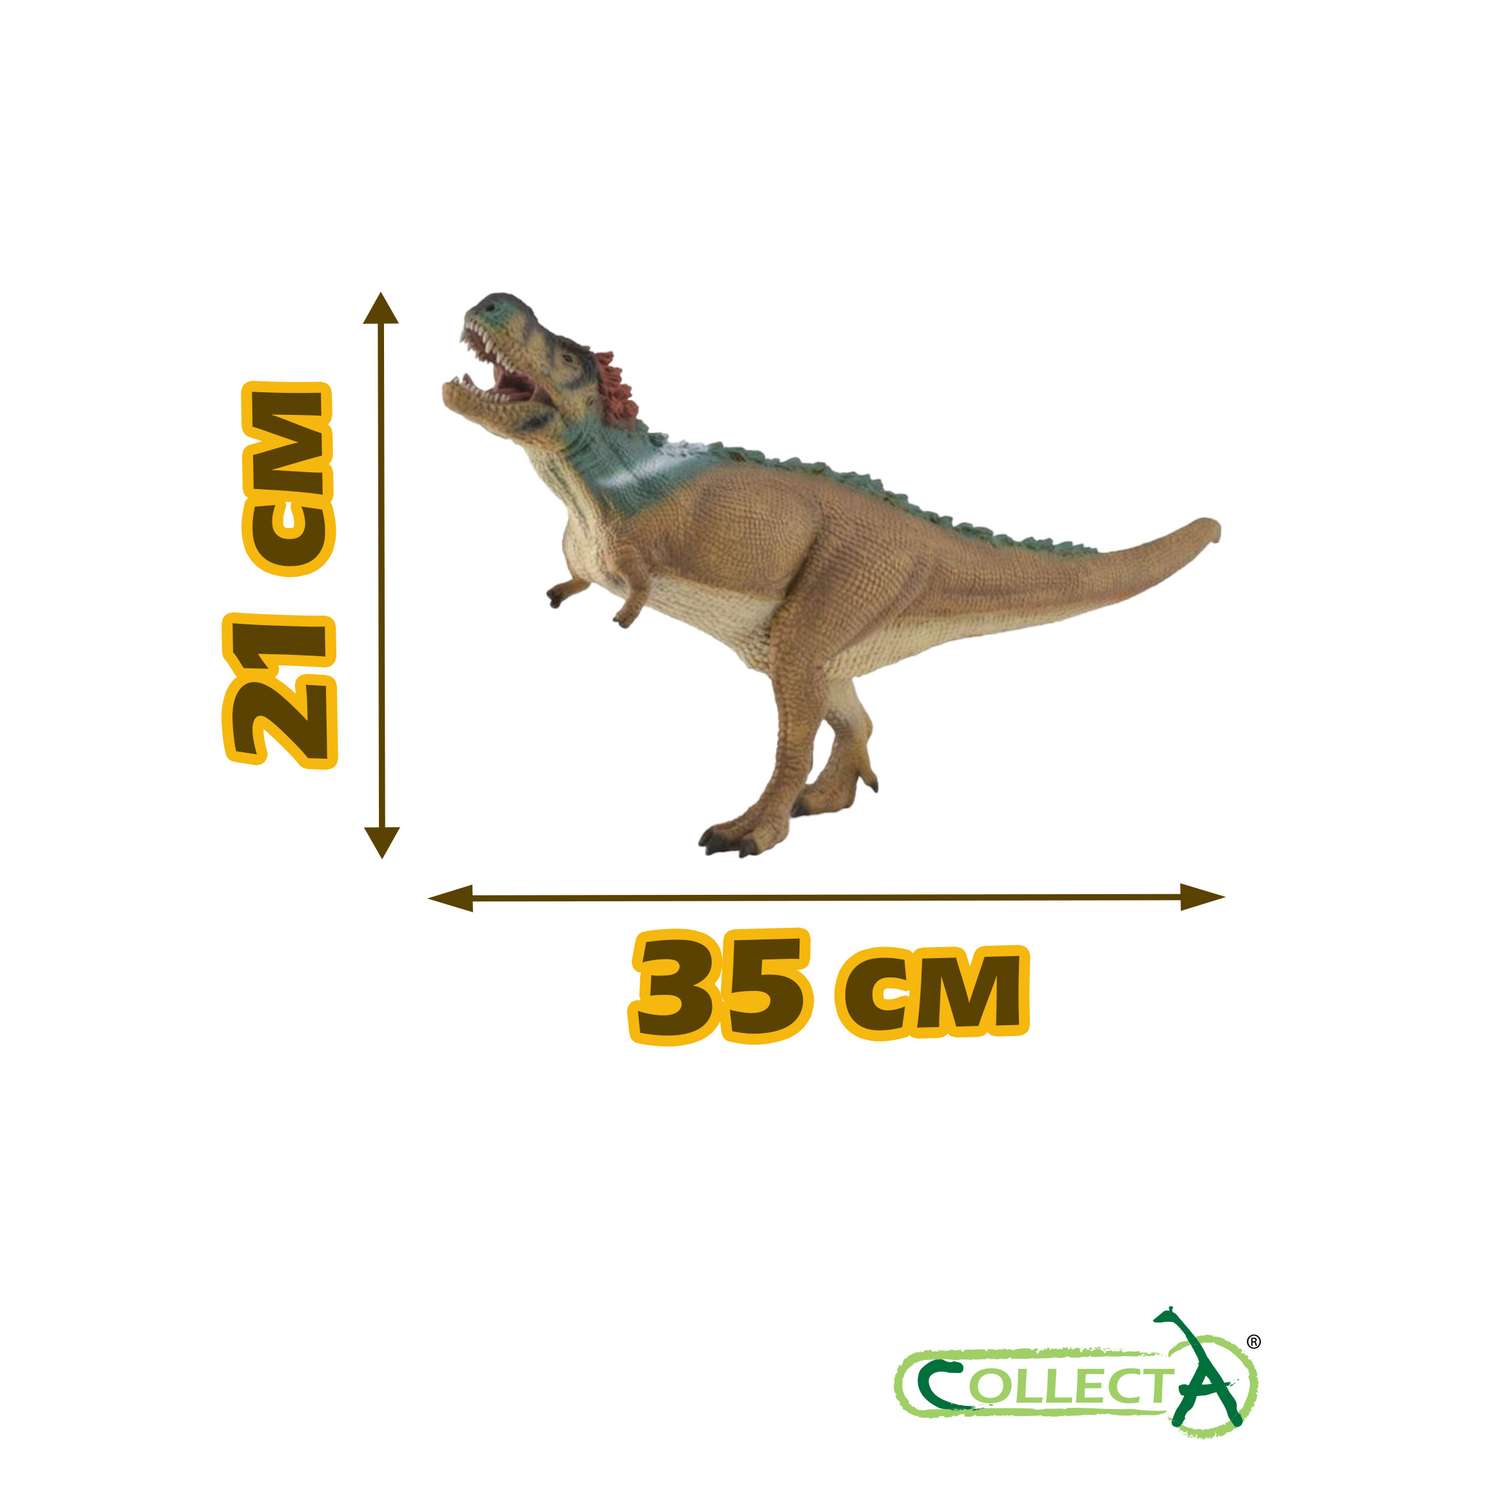 Игрушка Collecta Тиранозавр с подвижной челюстью фигурка динозавра - фото 2